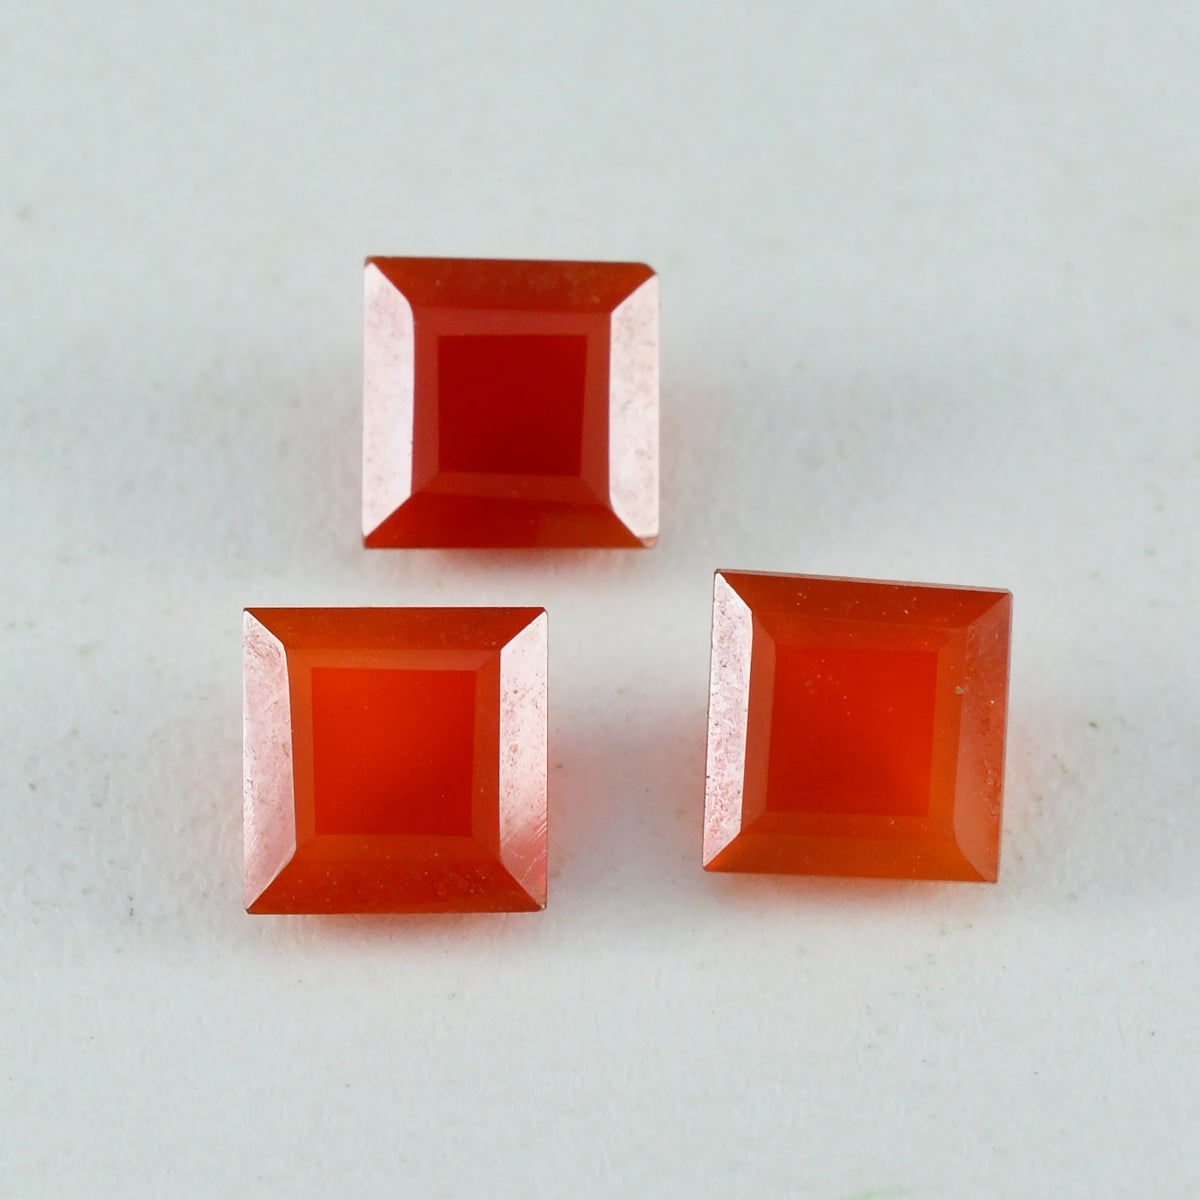 riyogems 1 шт. натуральный красный оникс ограненный 8x8 мм квадратной формы удивительного качества, свободный драгоценный камень